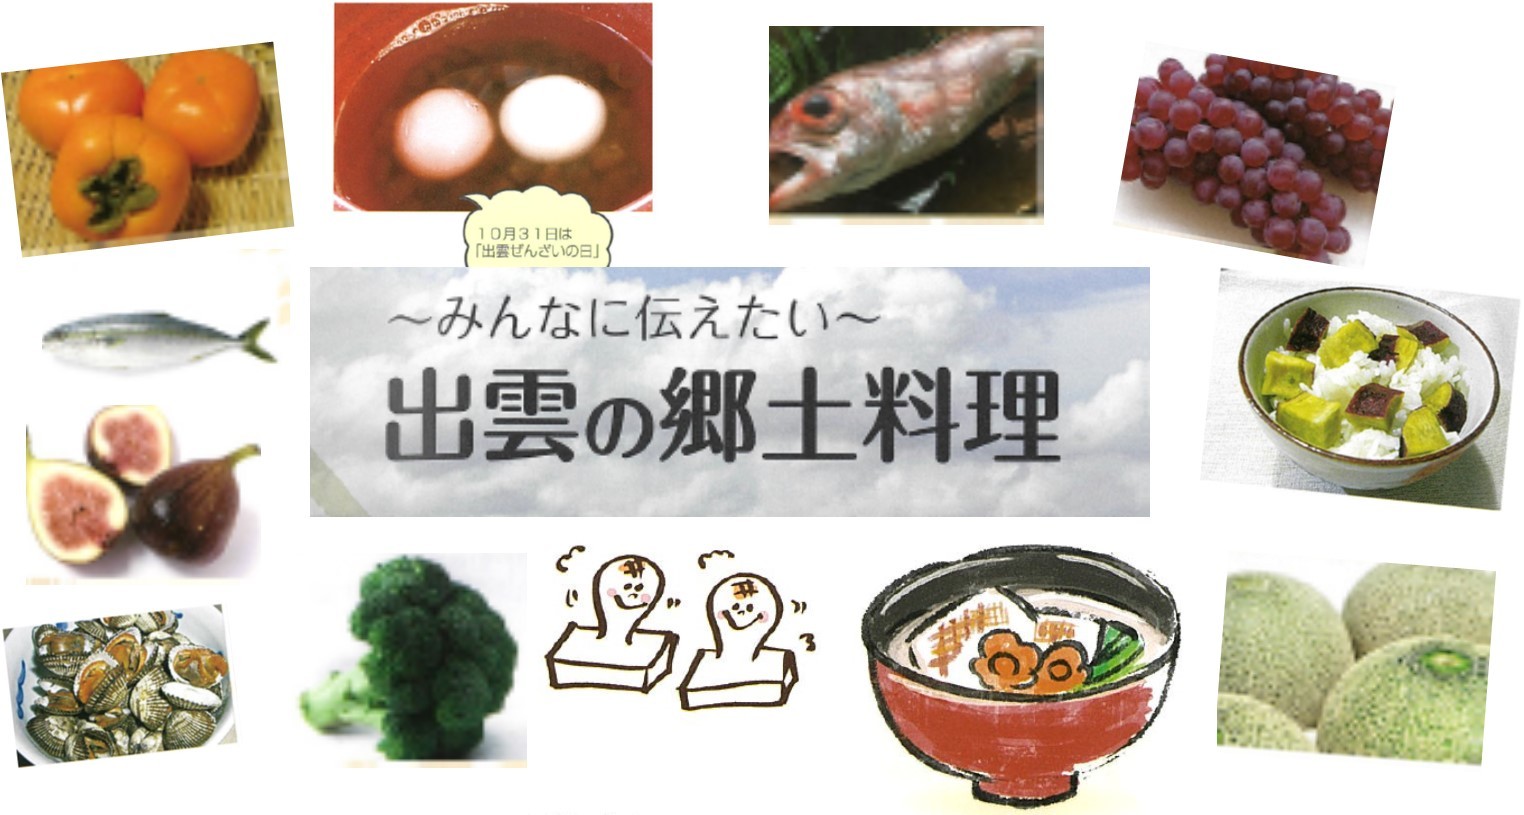 島根県 郷土料理 伝承料理 出雲圏域 トップ くらし 健康 健康 食育の推進 レシピ集 伝えたいしまねの料理